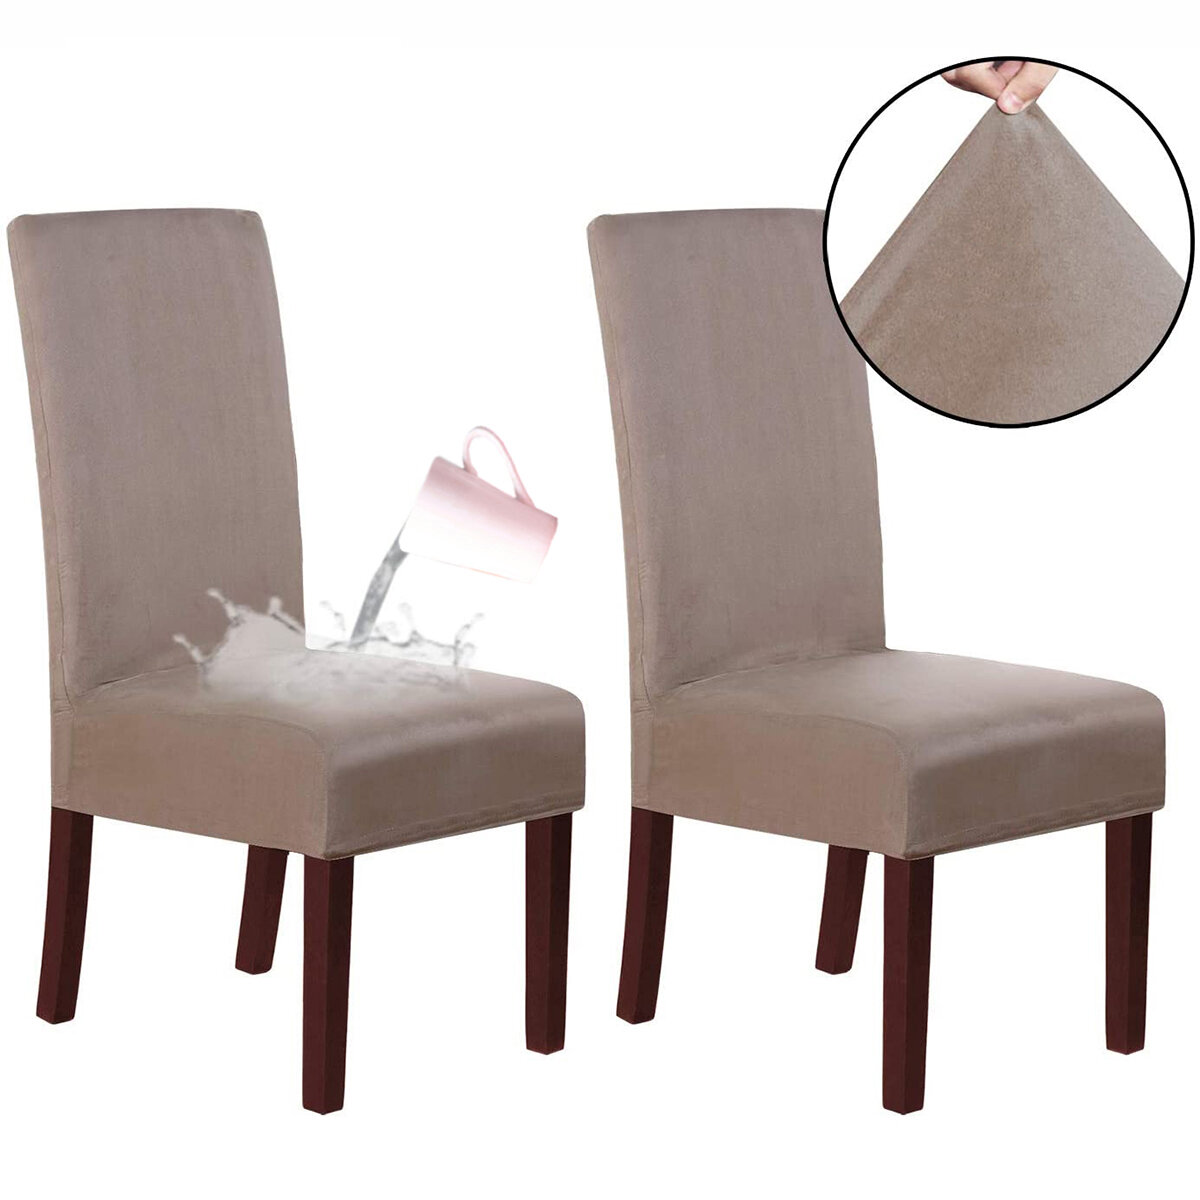 2 قطعة أغطية كرسي قابلة للإزالة ضد للماء كراسي تناول الطعام حامي Soft غطاء مقعد لغرفة الطعام وحفلات الزفاف وحفلات المطبخ